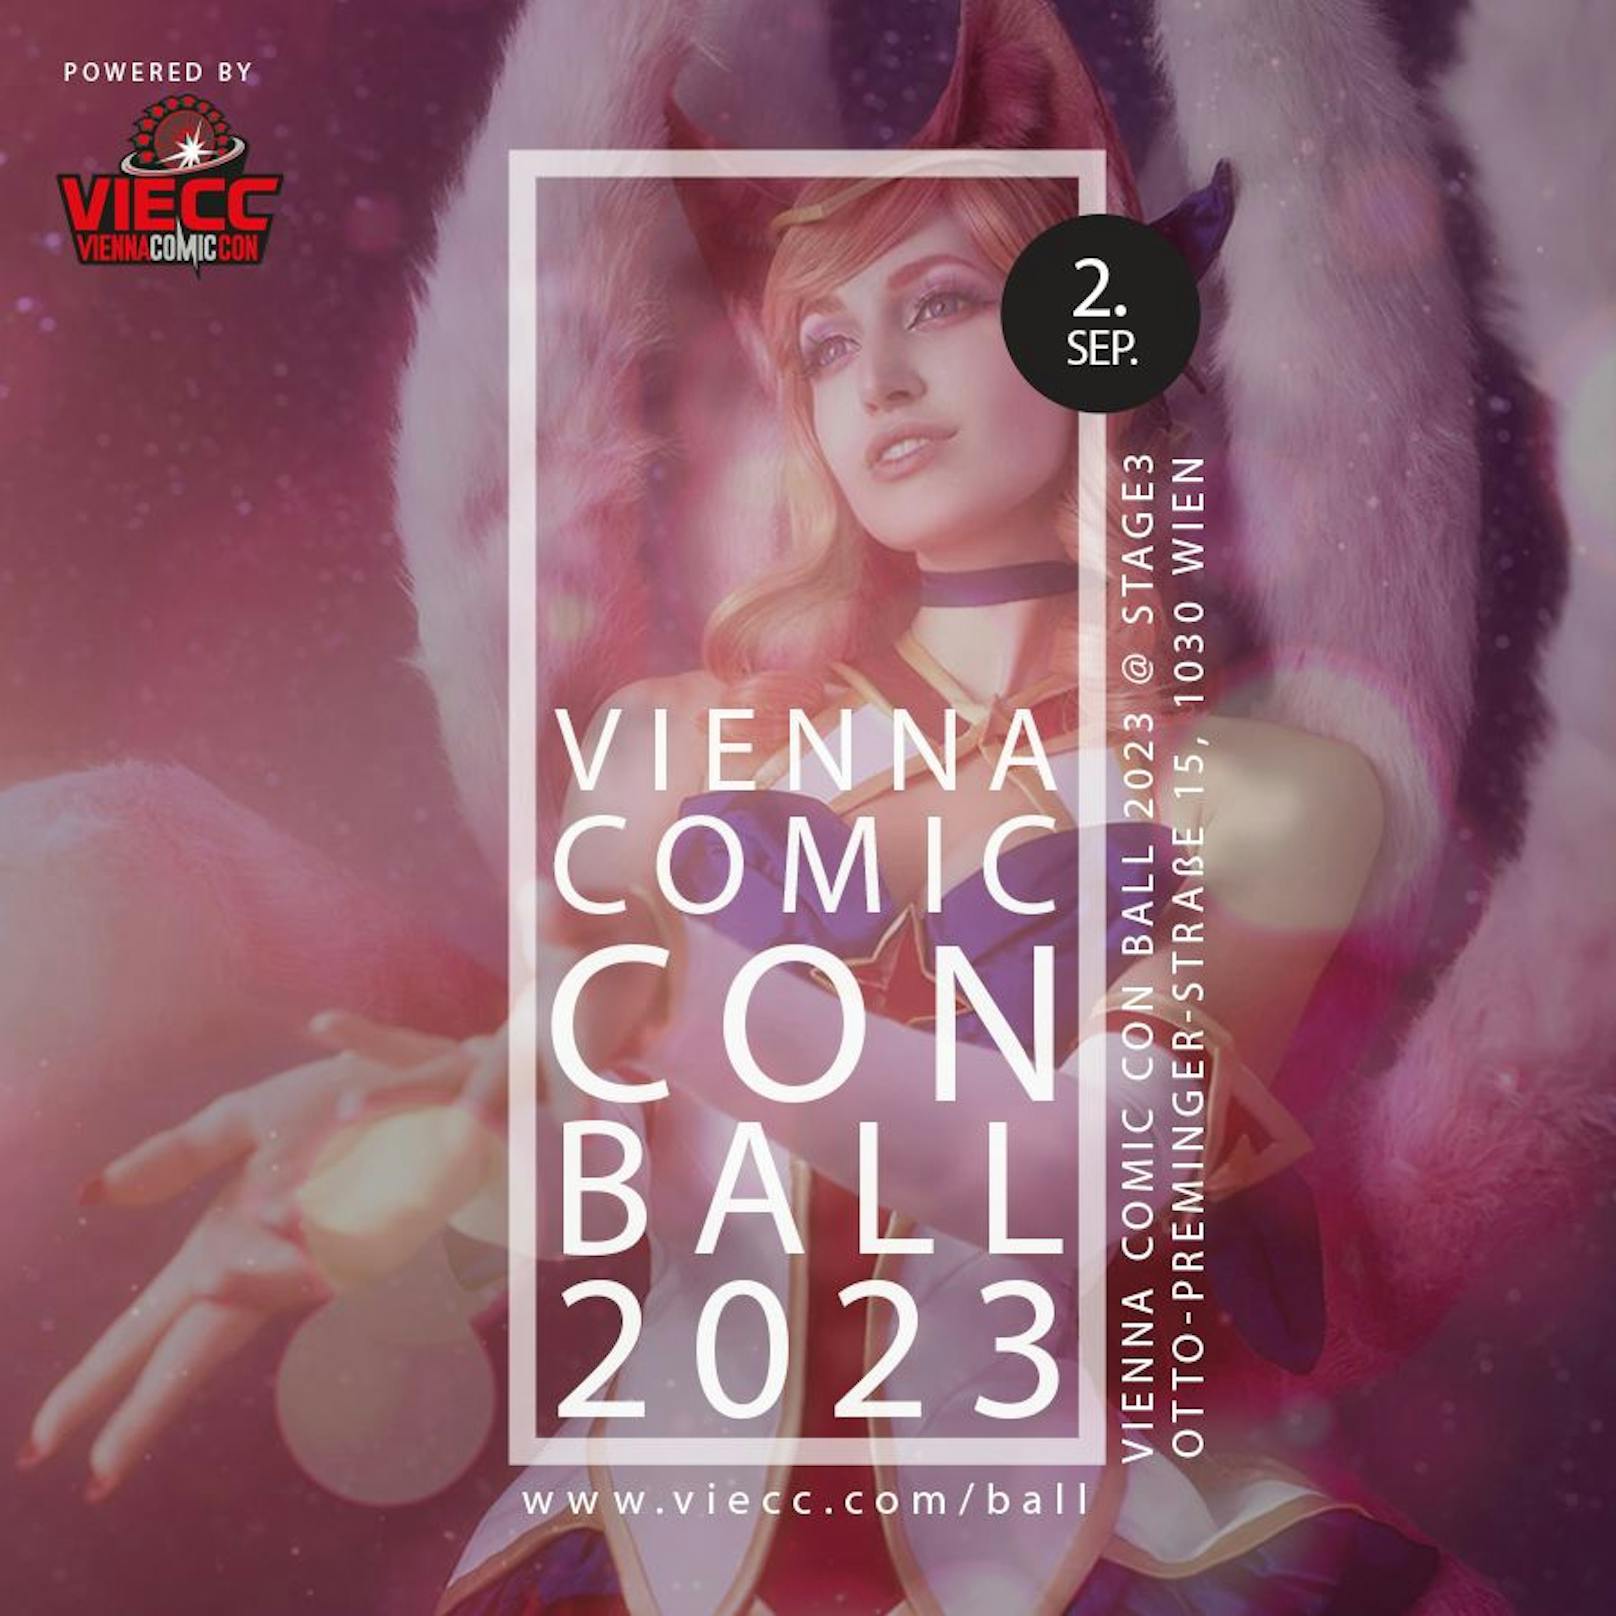 VIECC Vienna Comic Con feiert Ball-Premiere.